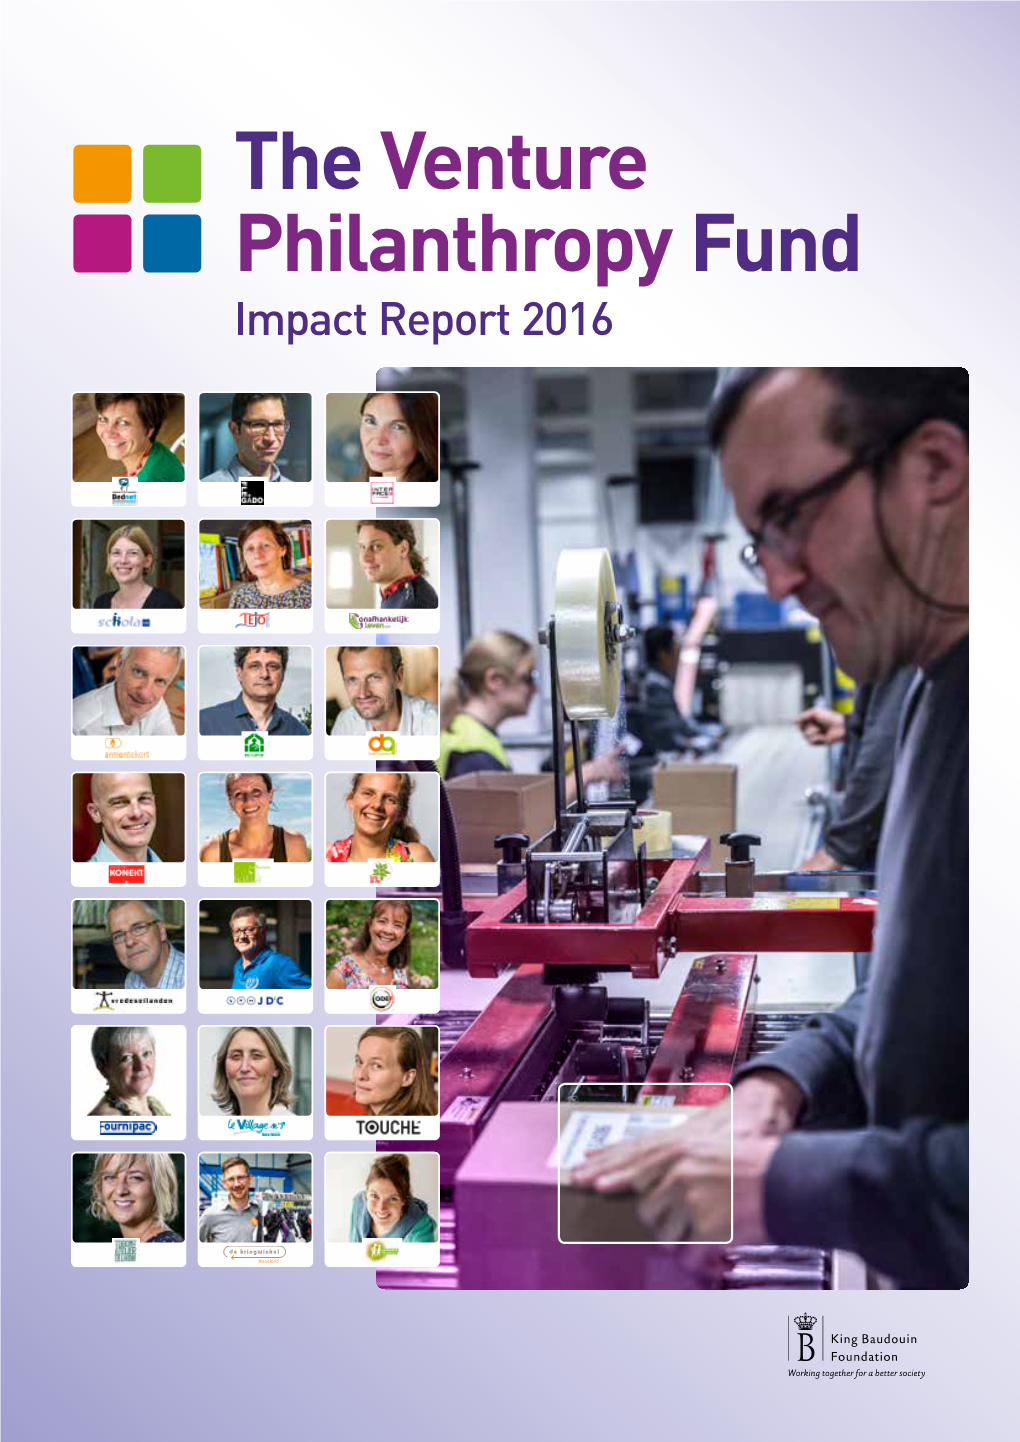 The Venture Philanthropyfund